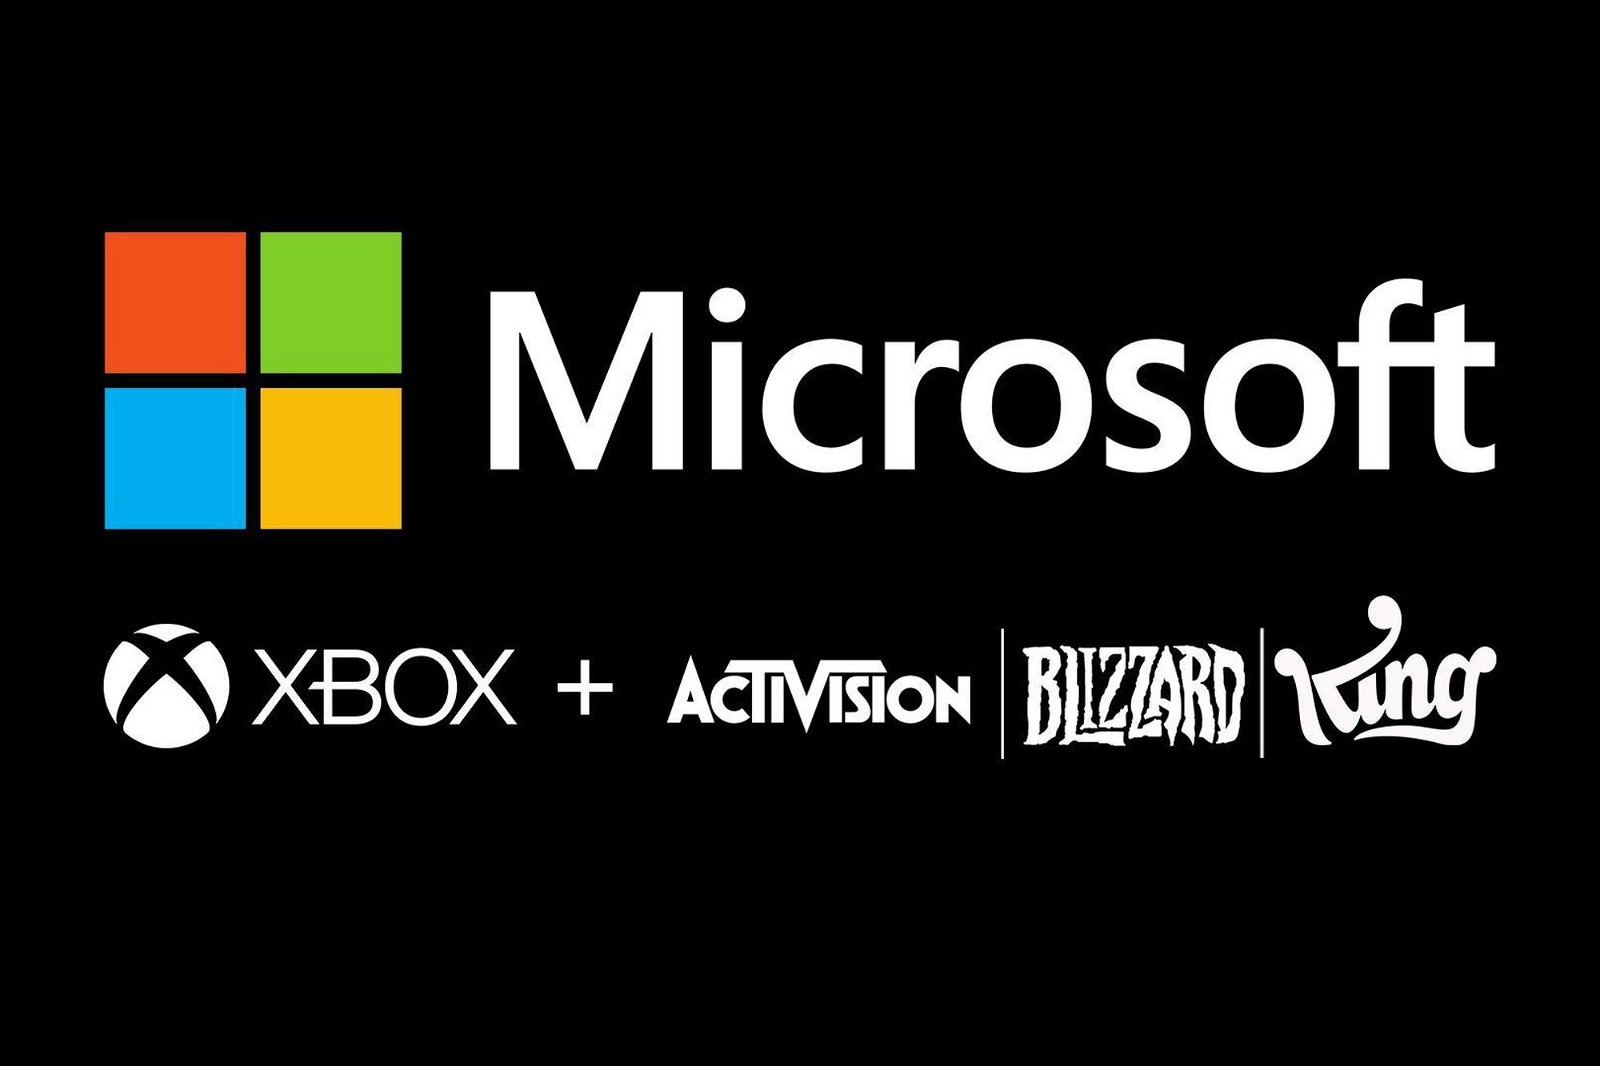 Microsoft удобно перекладывает всю вину на Activision после массовых увольнений, которые привели в ярость фанатов Call of Duty